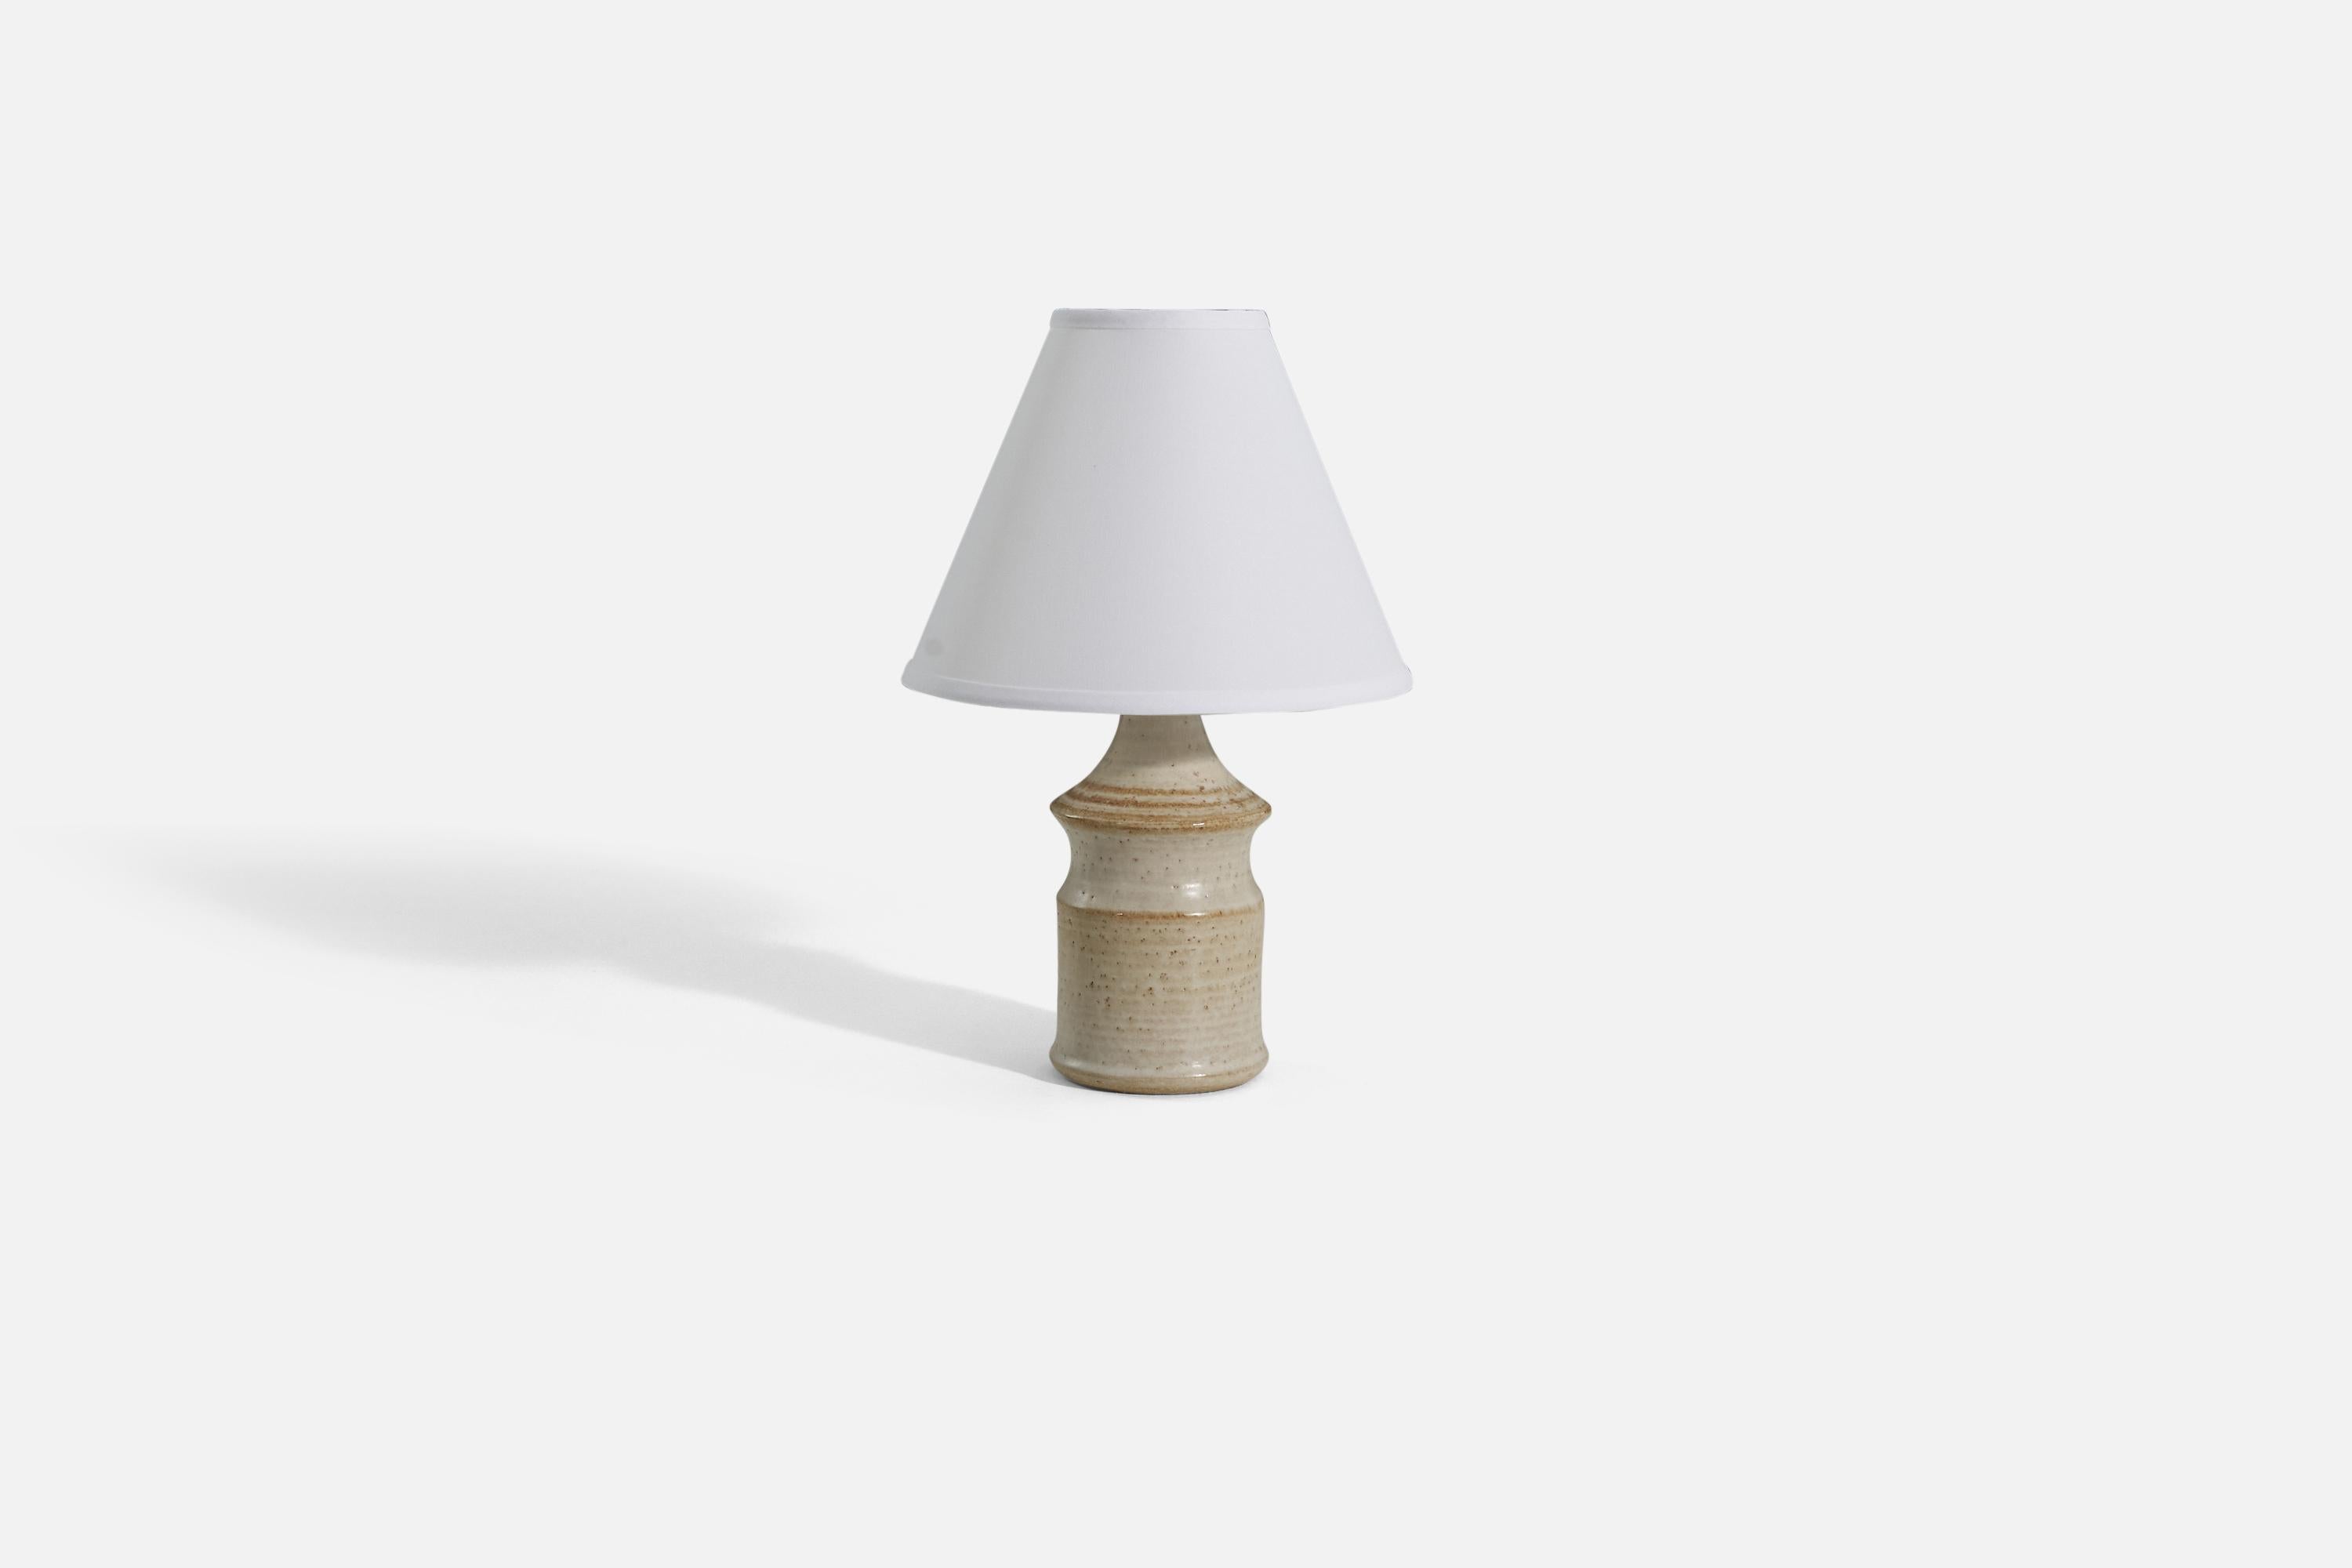 Lampe de table rayée blanc cassé et marron produite par Søholm Keramik, situé sur l'île de Bornholm au Danemark. 

Vendu sans abat-jour. 

Dimensions de la lampe (pouces) : 12 x 4,5 x 4,5 (H x L x P)
Dimensions de l'abat-jour (pouces) : 4.25 x